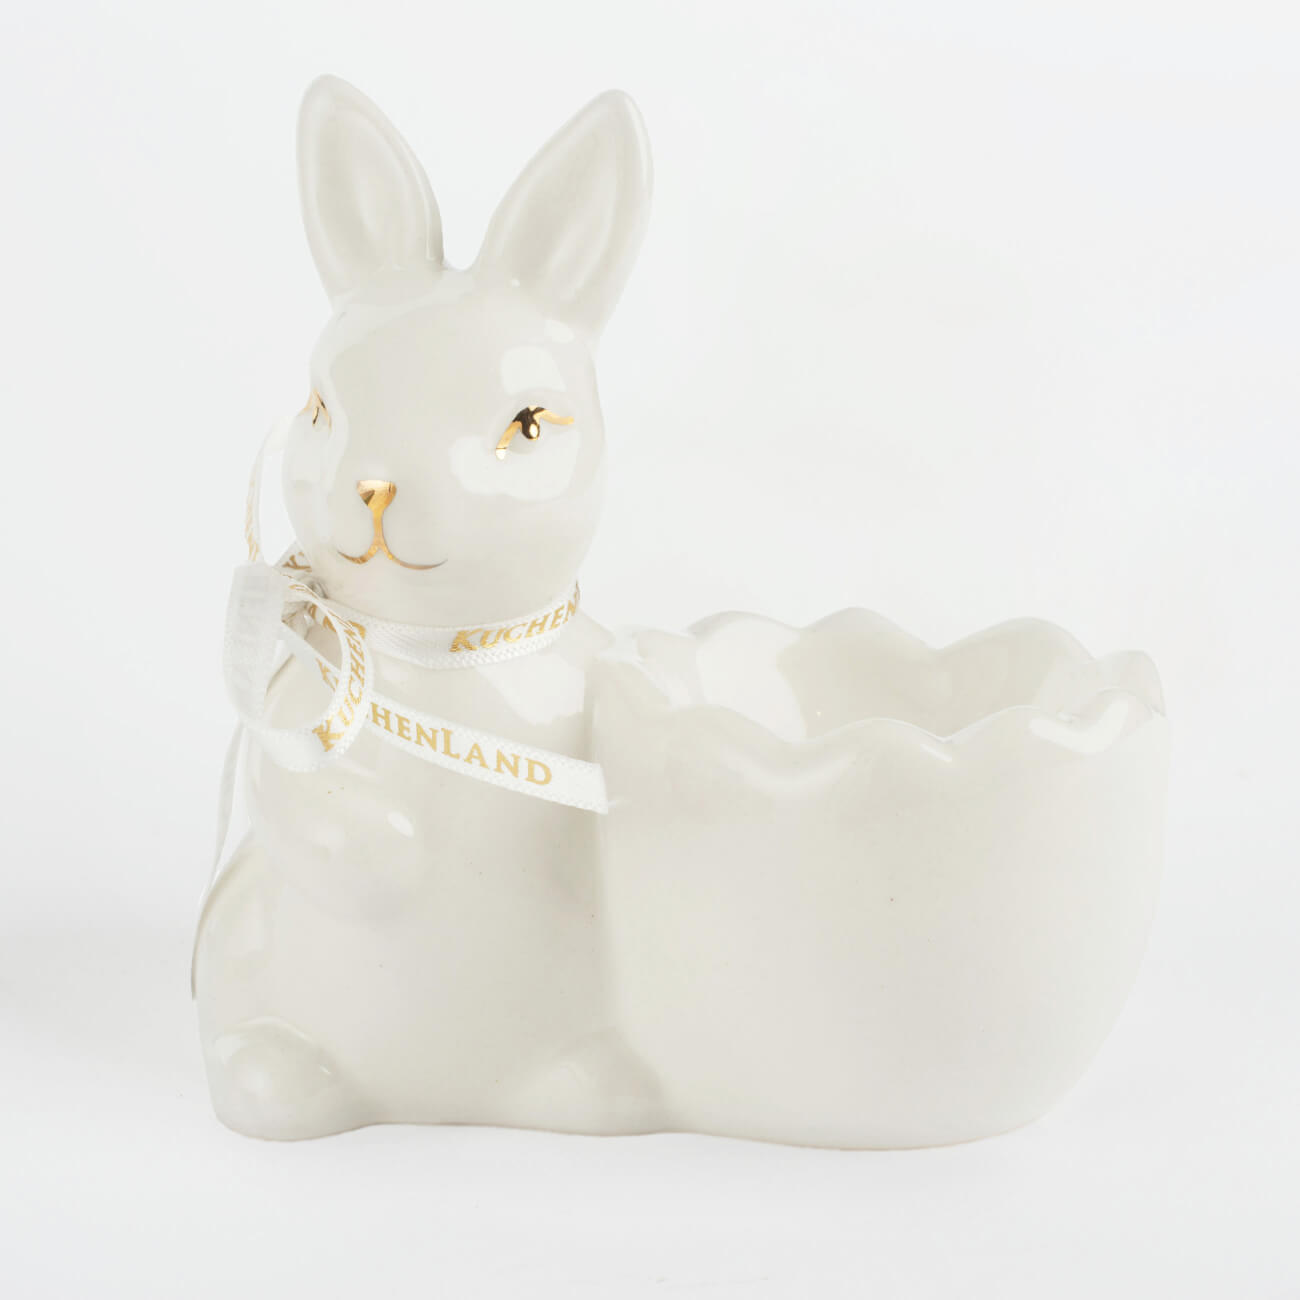 Подставка для яйца, 10 см, керамика, бело-золотистая, Кролик со скорлупкой, Easter gold подставка для яйца 8х5 см дерево кролик natural easter